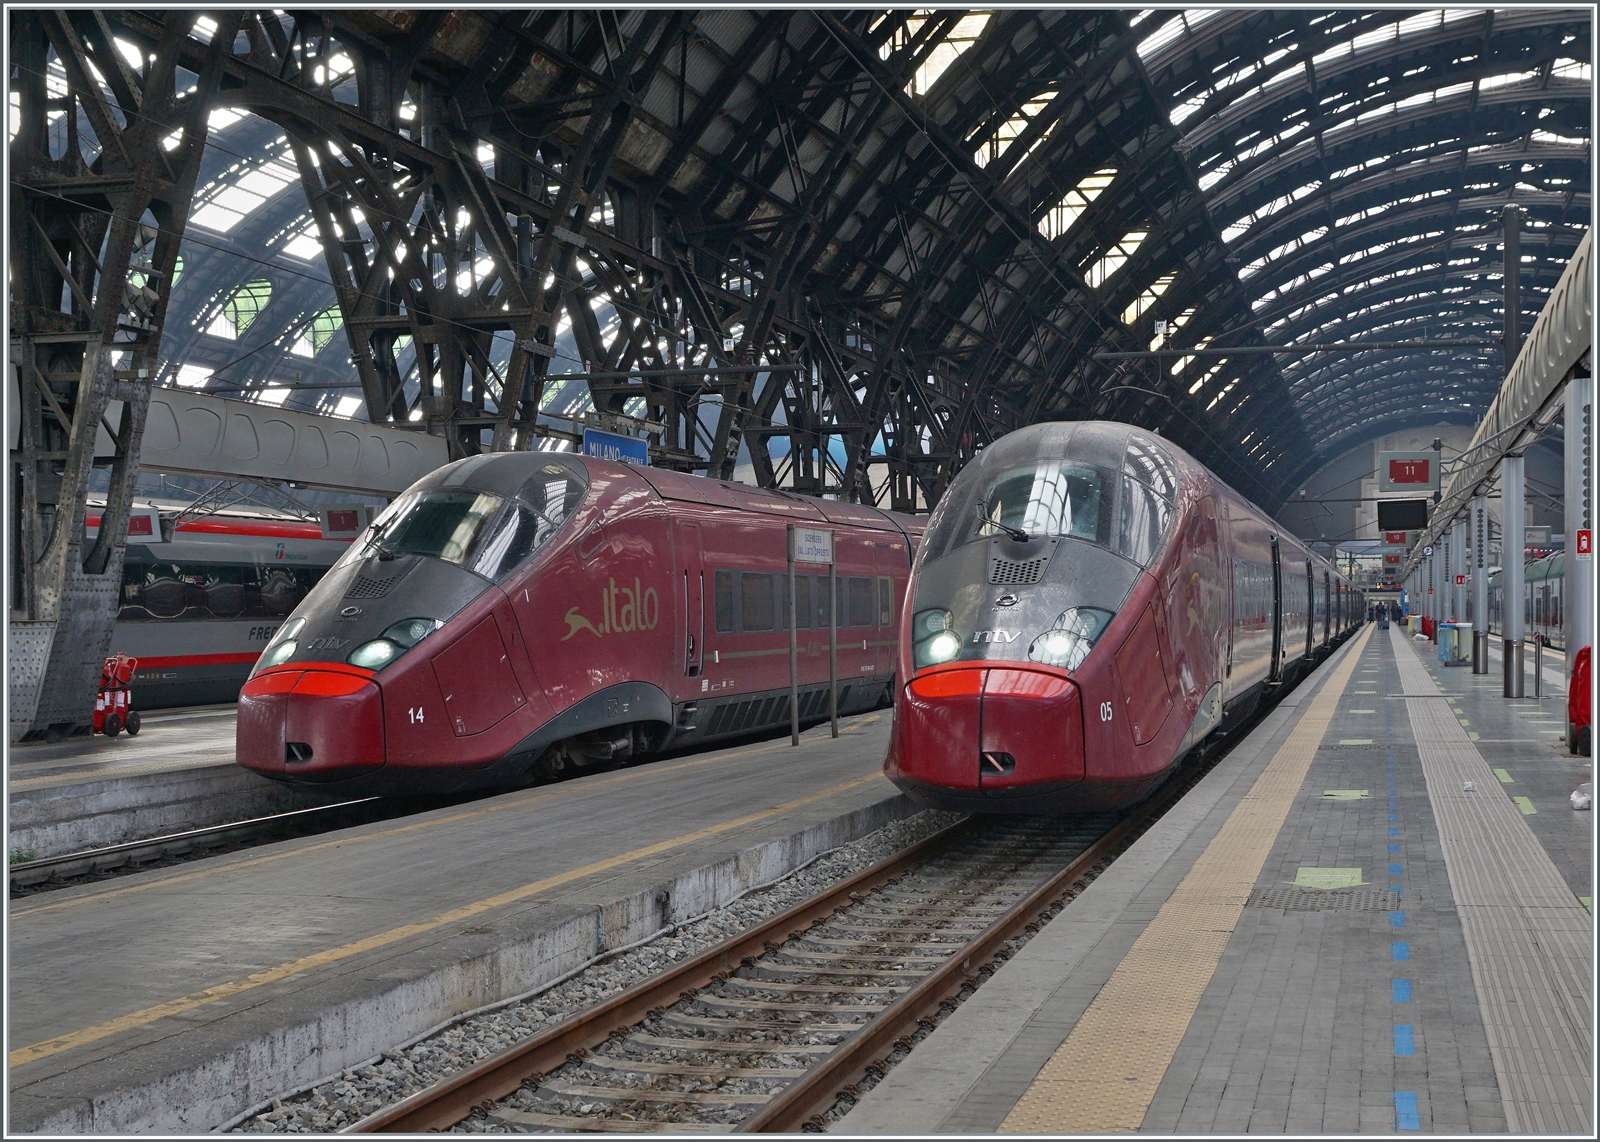 Als es in Europa noch überall rauchte und dampfte, fuhren in Italien bereits erste  Hochgeschwindigkeitstriebzüge  zwischen Rom und Milano. Auch die erste Hochgeschwindigkeitsstrecke in Europa, die Diretissima, wurde 1978 in Italien eröffnet (wenn auch nur eine kurzes Teilstück). Ebenfalls einen gewissen  Vorsprung  auf andere scheint die Tatsache zu sein, dass in Italien neben der FS Trenitalia  private  Gesellschaft Hochgeschwindigkeitsverkehr betreibt: die  Nuovo Trasporto Viaggiatori / NTV .Italo . 
Die NTV besitzt 25 Einheiten des auf der TGV Bassis konstruierten  ETR 575  AGV. 
Im Bild sind die beiden NTV ETR 575 005 und 014 in Milano Centrale zu sehen. 

8. November 2022